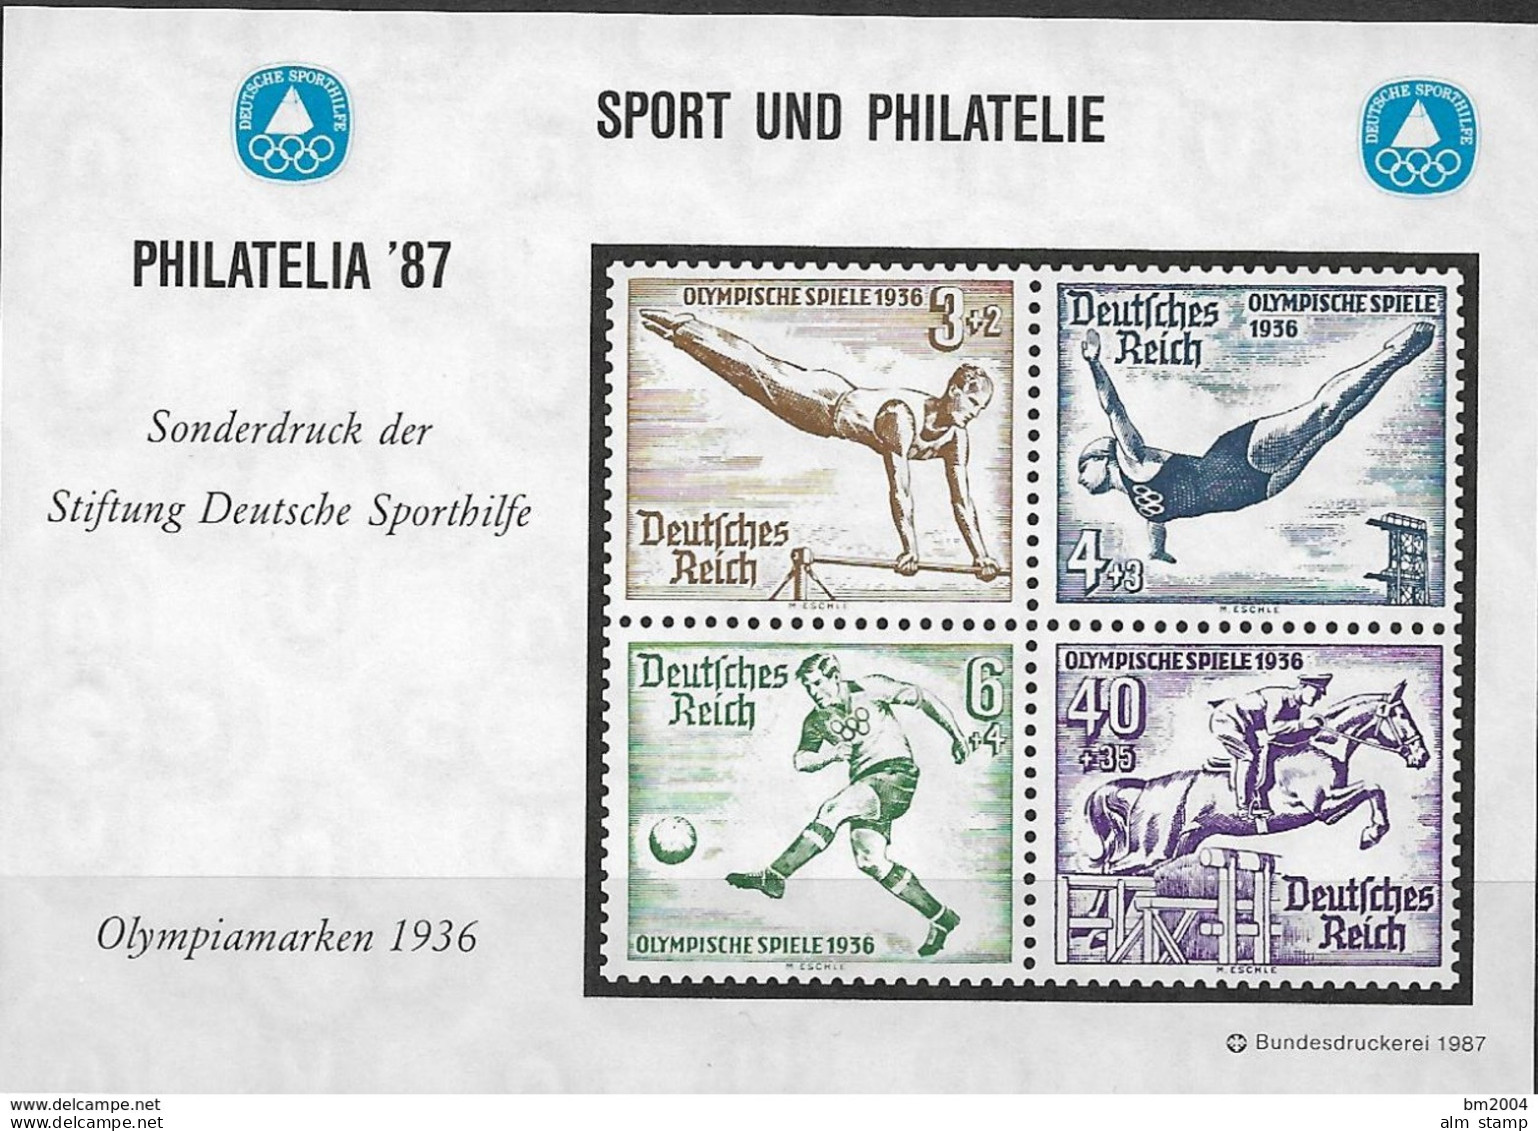 1987 Deutschland Vignette  PHILATELIA '87  " OLYMPIAMARKEN 1936 - Ete 1936: Berlin